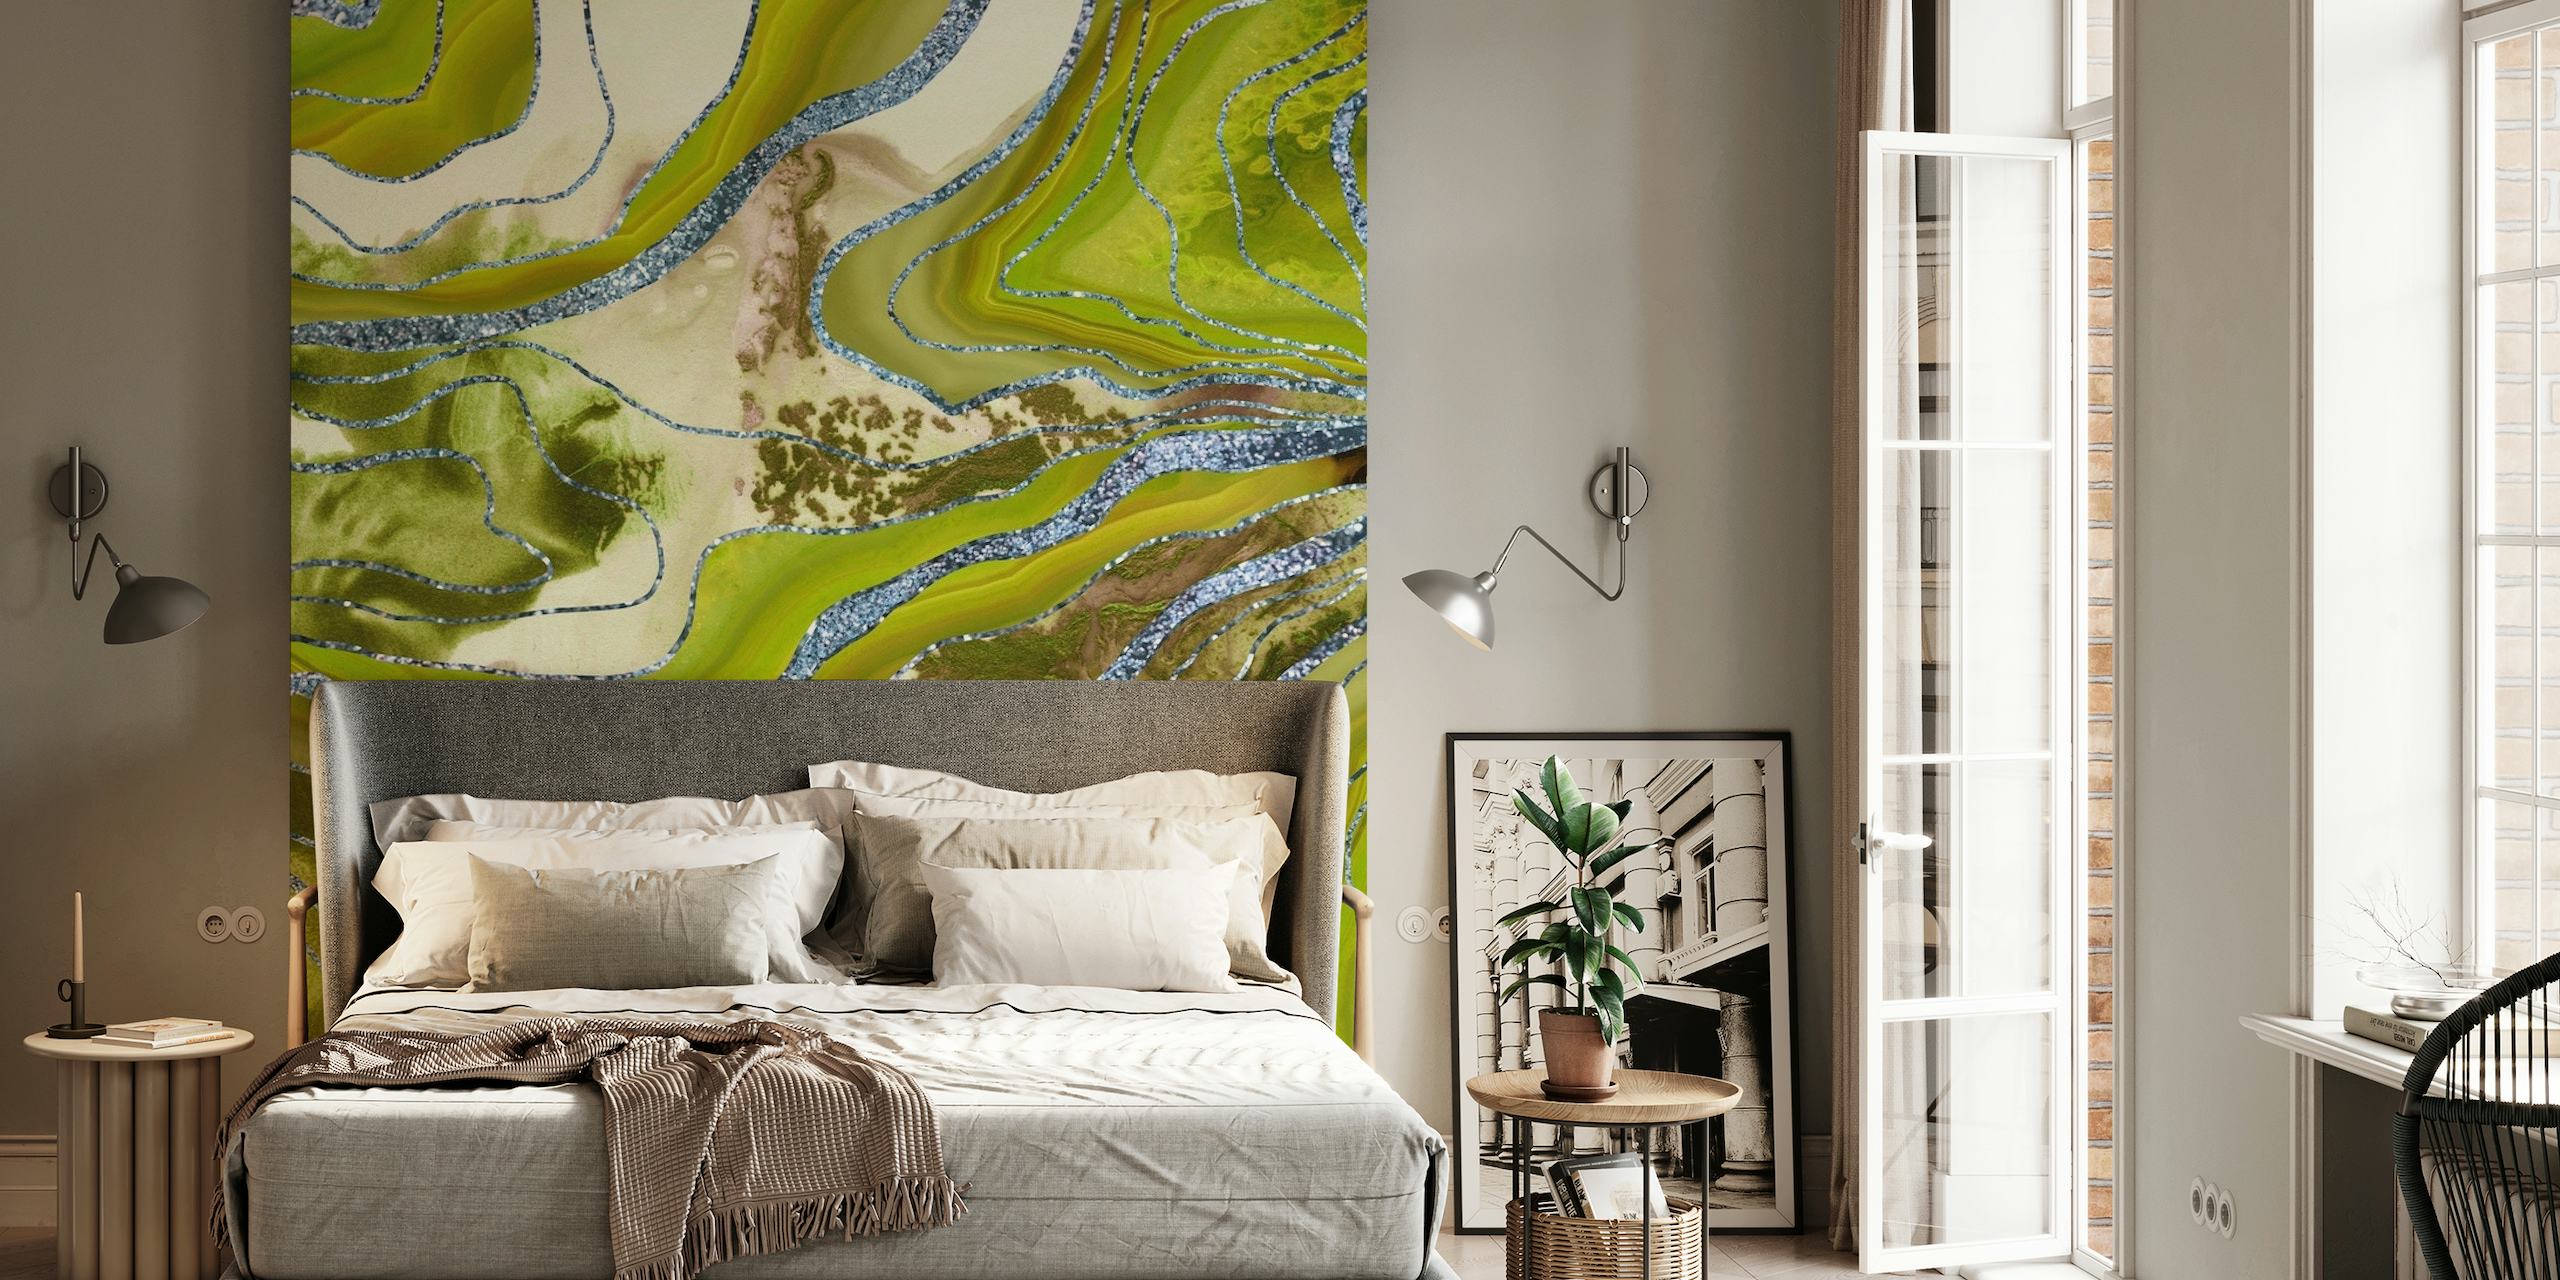 Vihreä ja kultainen nestemäinen marmoriakaattikuvioinen seinämaalaus